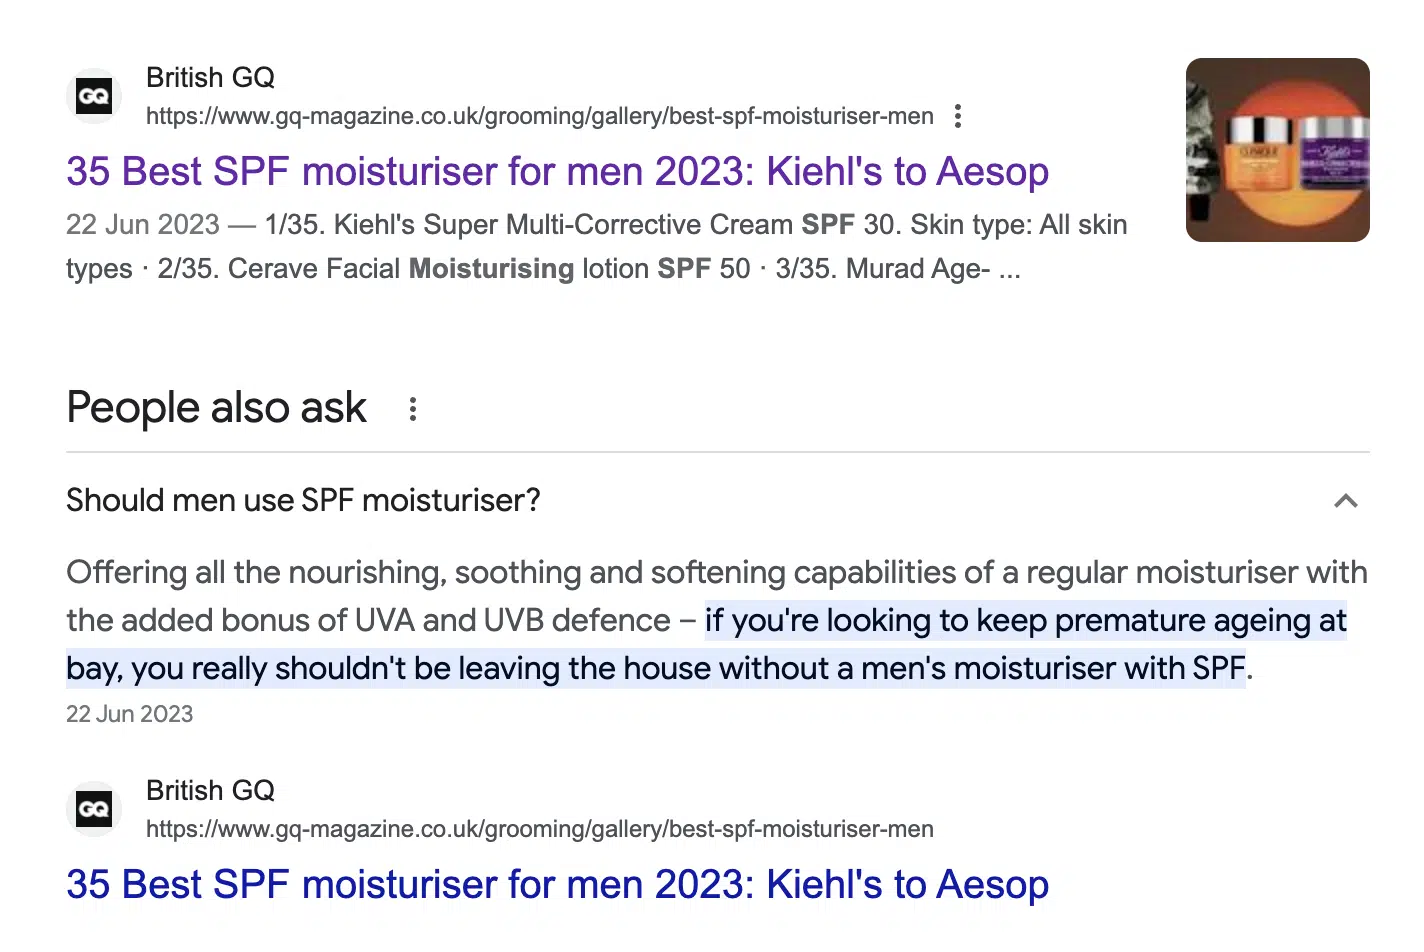 Mens moisturiser with SPF - Multiple rankings